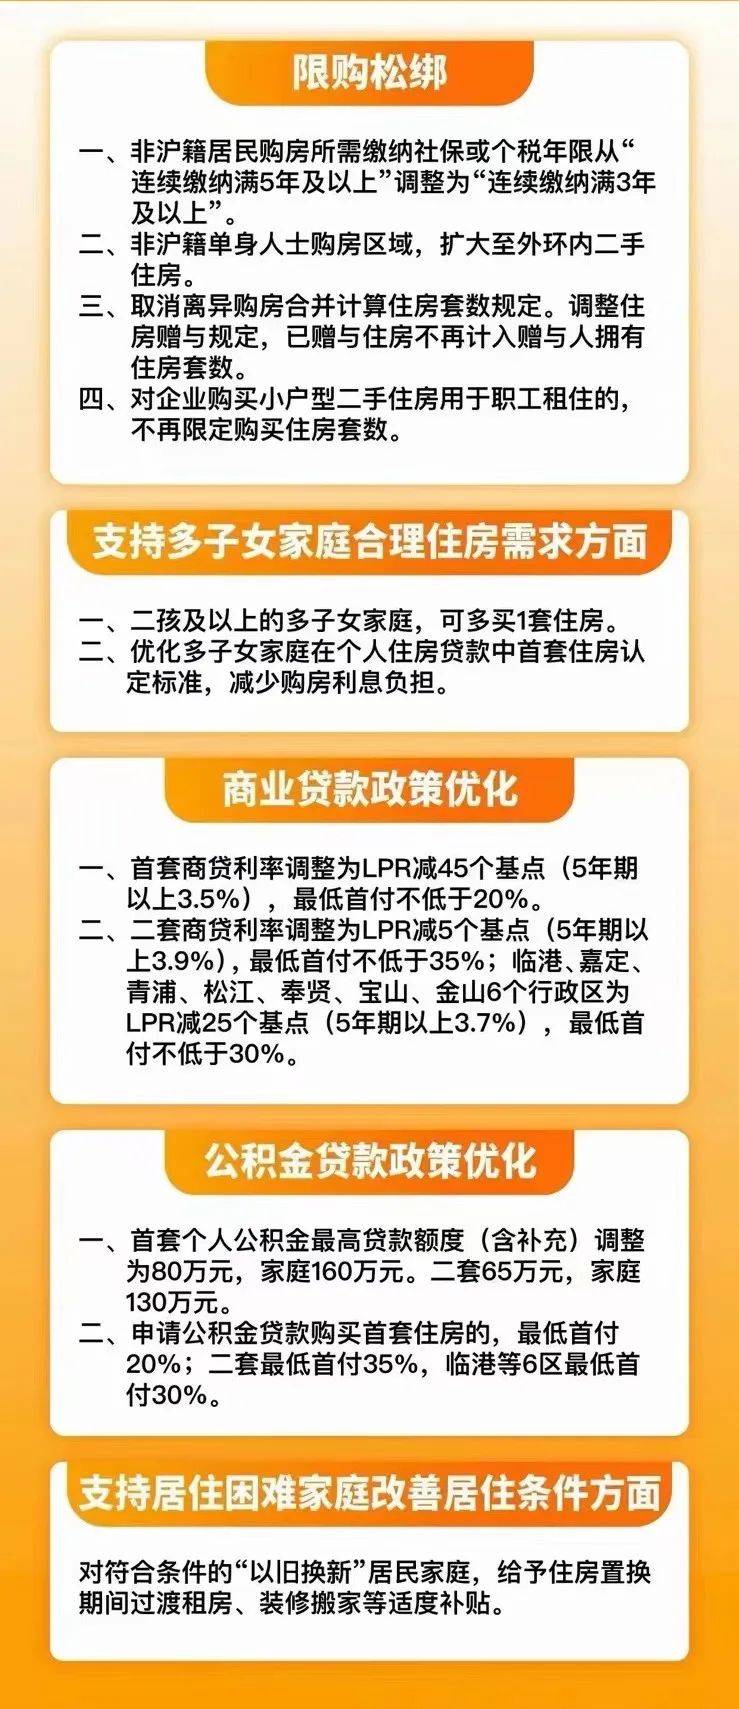 上海最新发布房产新政!5月28号执行!